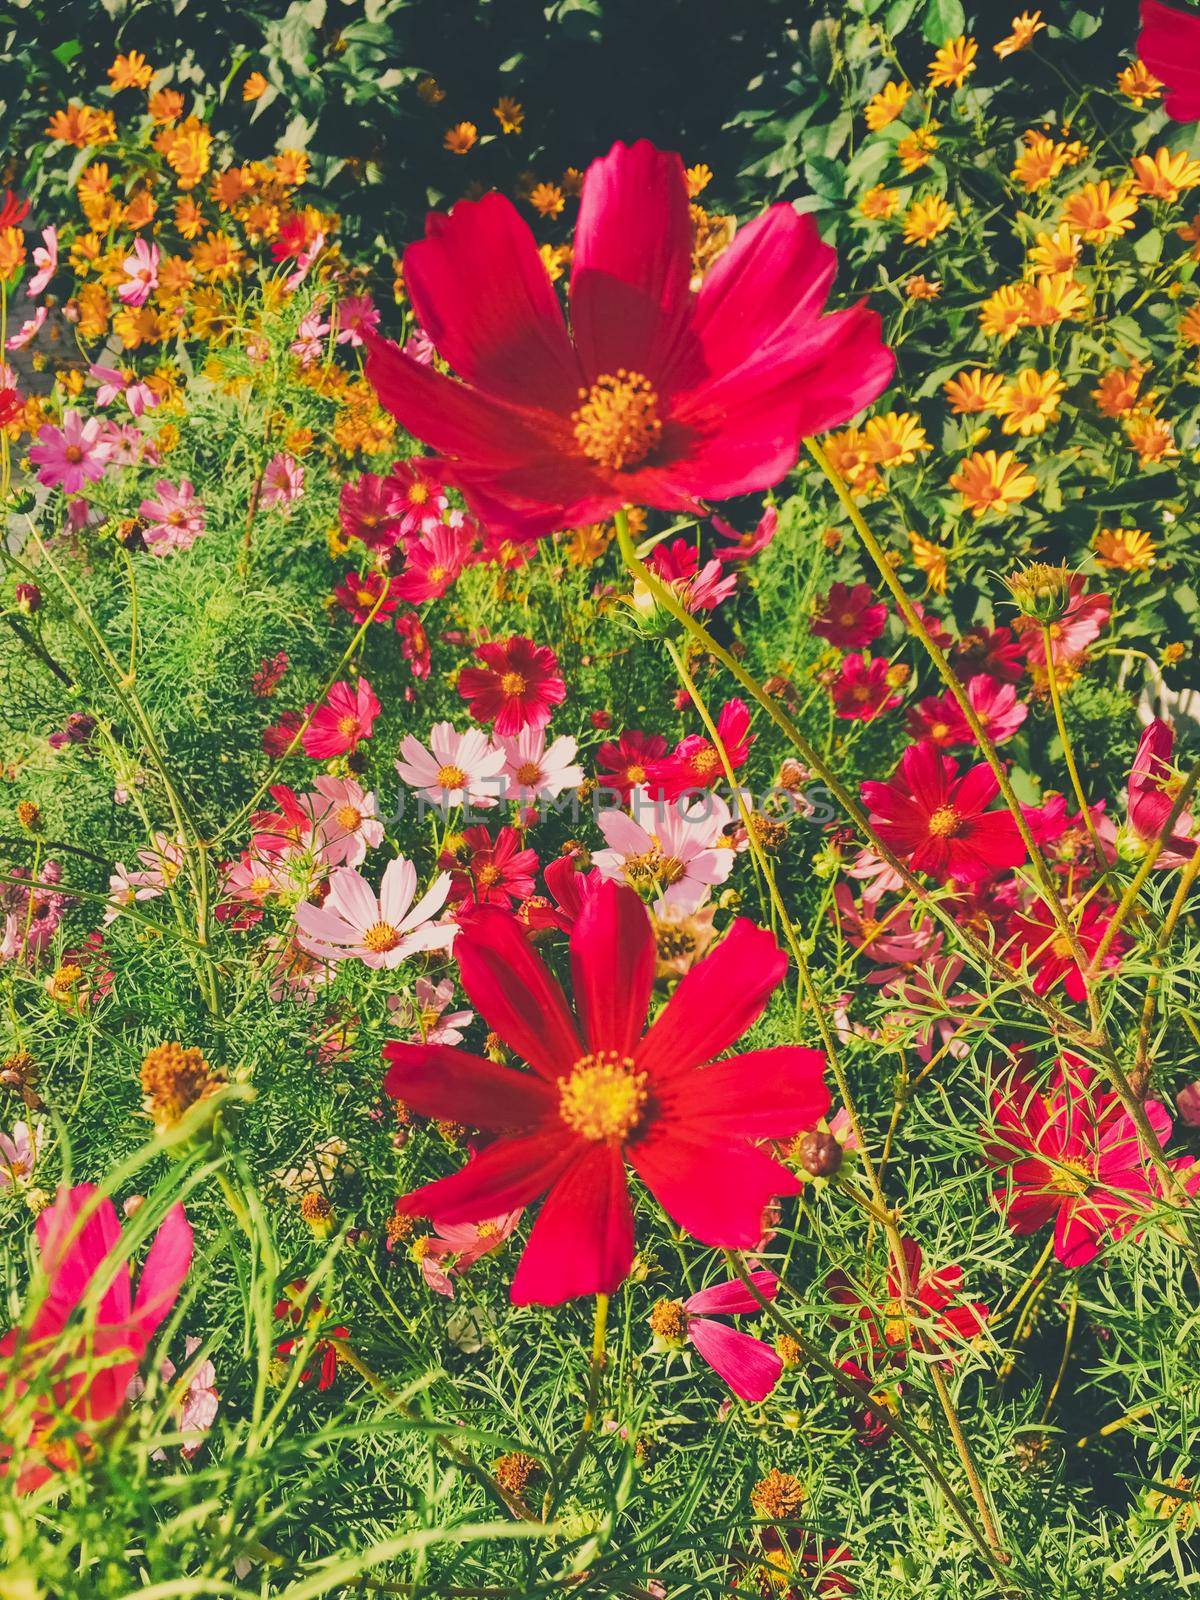 Daisy flowers in sunny garden by Anneleven